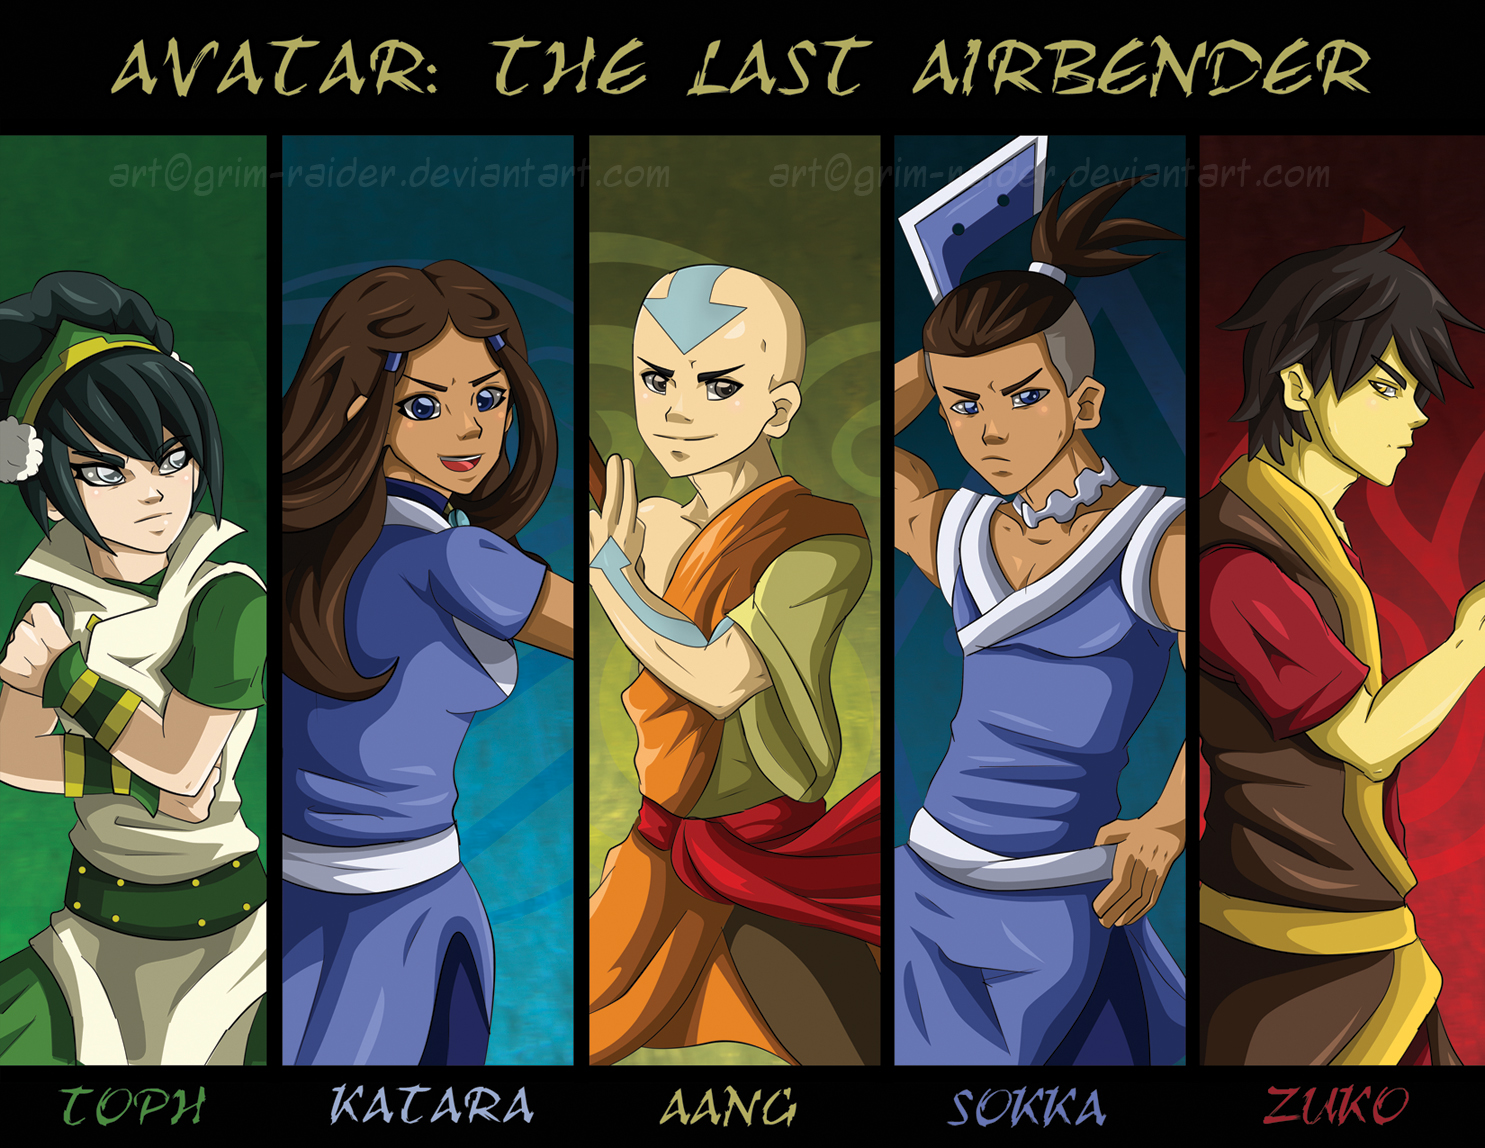 Avatar: The Last Airbender: United -Redux by GrimzyRaider on DeviantArt